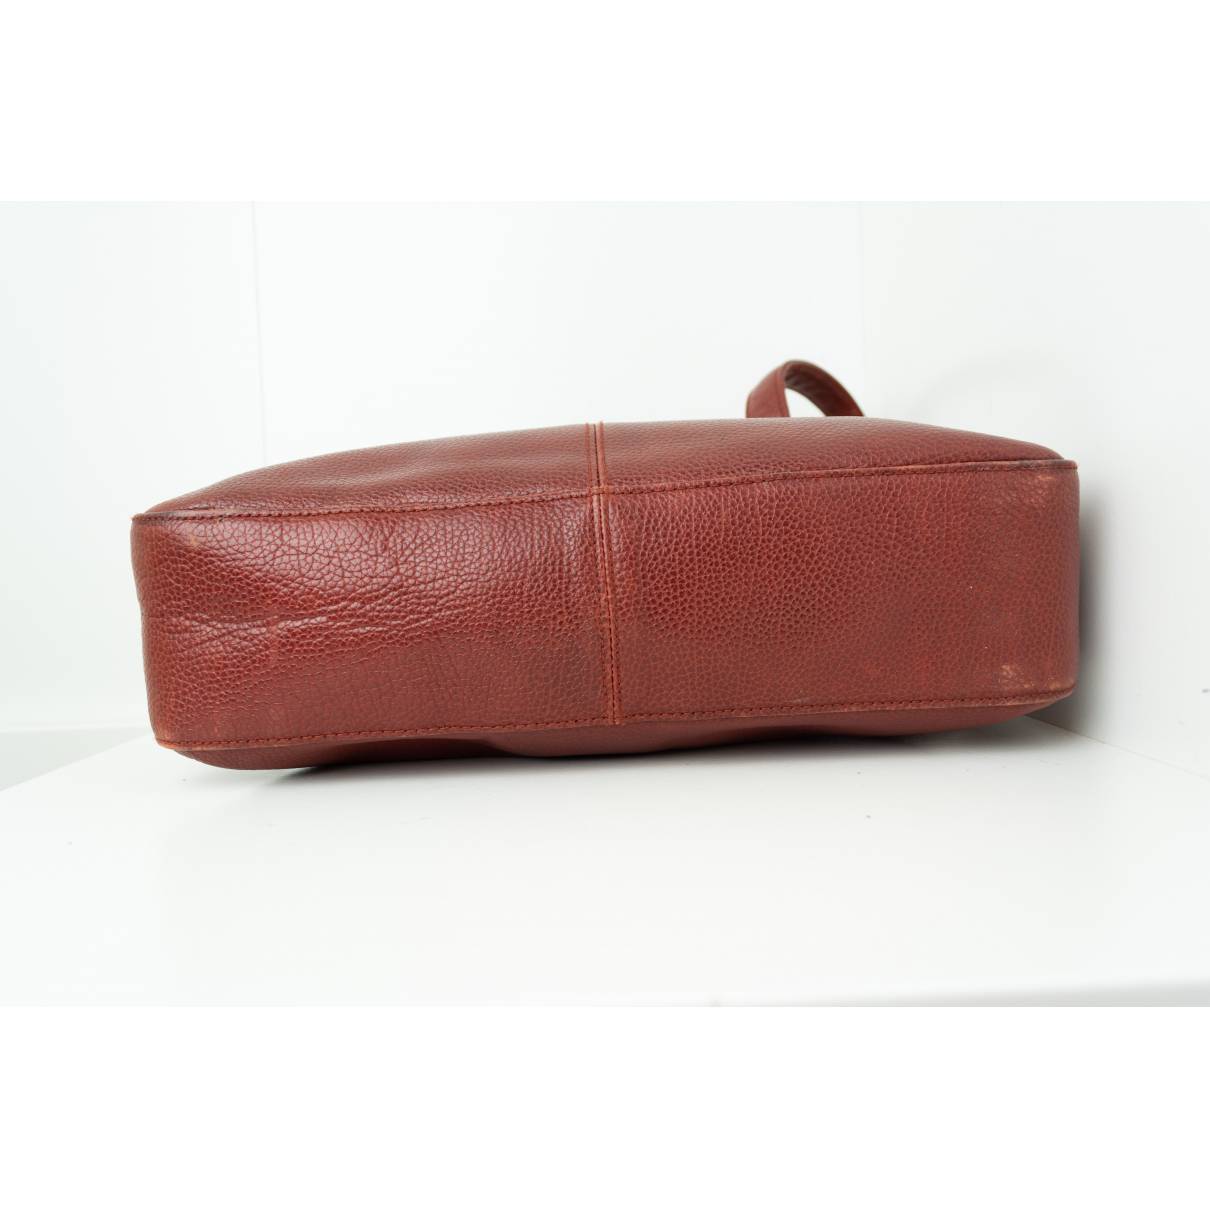 Handbag PICARD Leather Messenger Bags, bag, purple, brown, leather